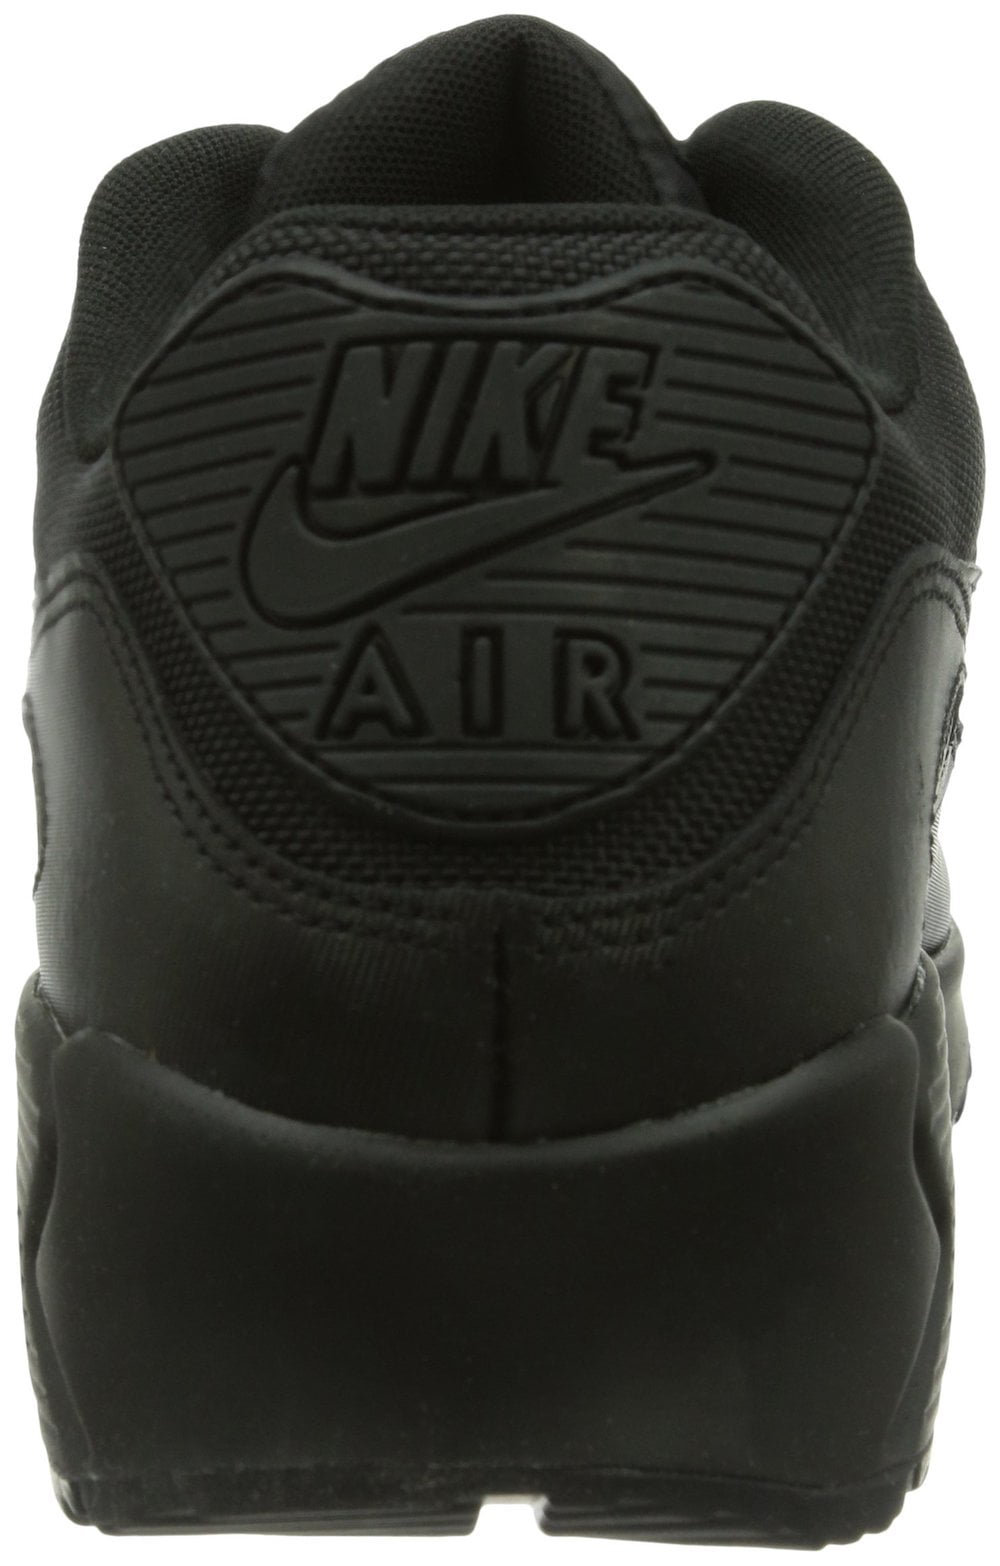 Screenplay Bacteria Alphabet Nike Air Max 90 Men's Essential Shoes Black/Black 537384-090 - Walmart.com